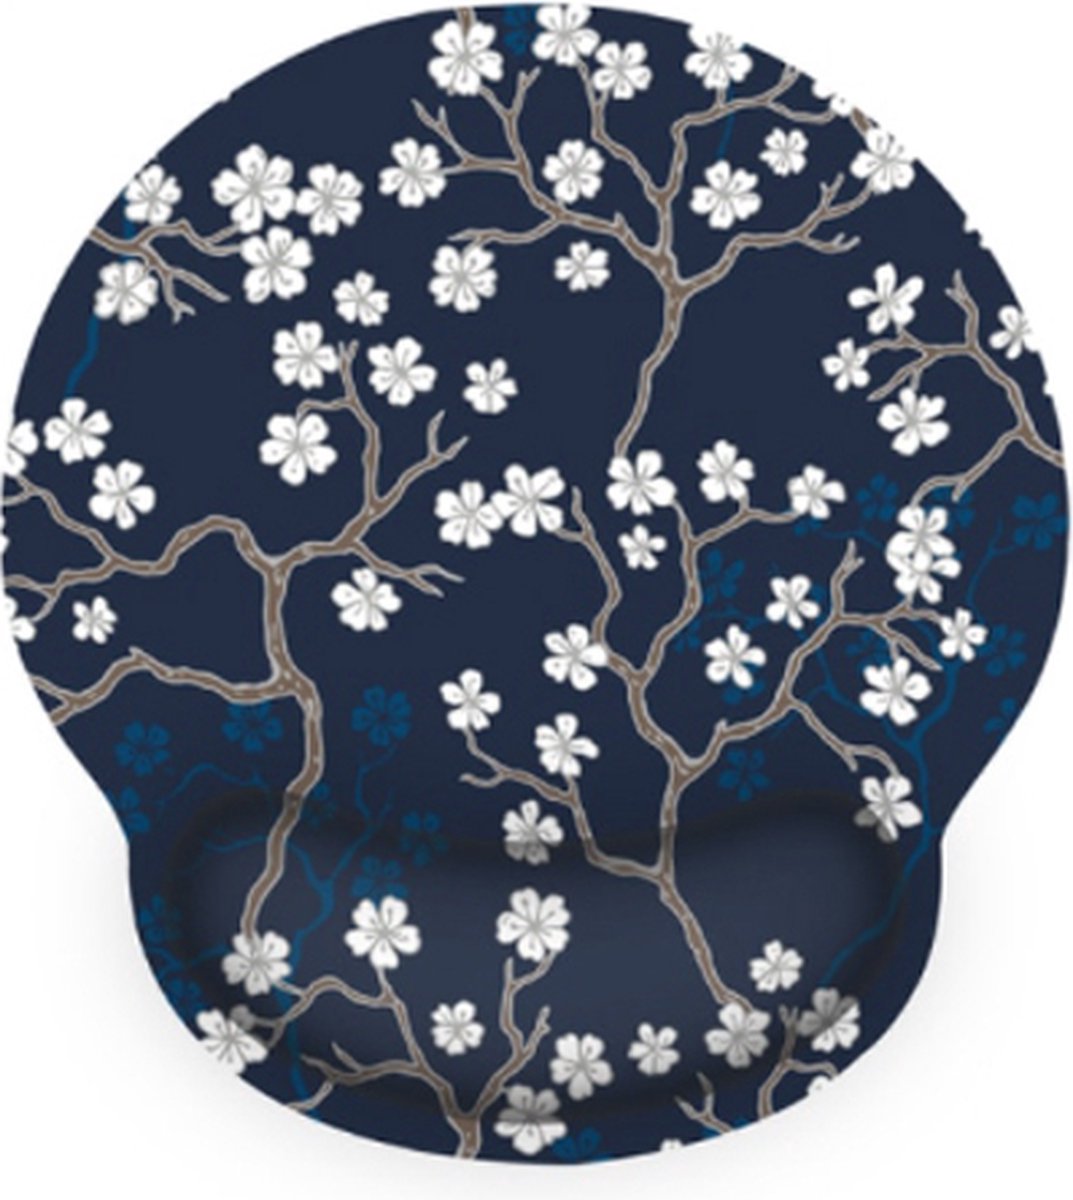 Moodadventures - muismat ergonomisch White Flowers - met polssteun - donkerblauw